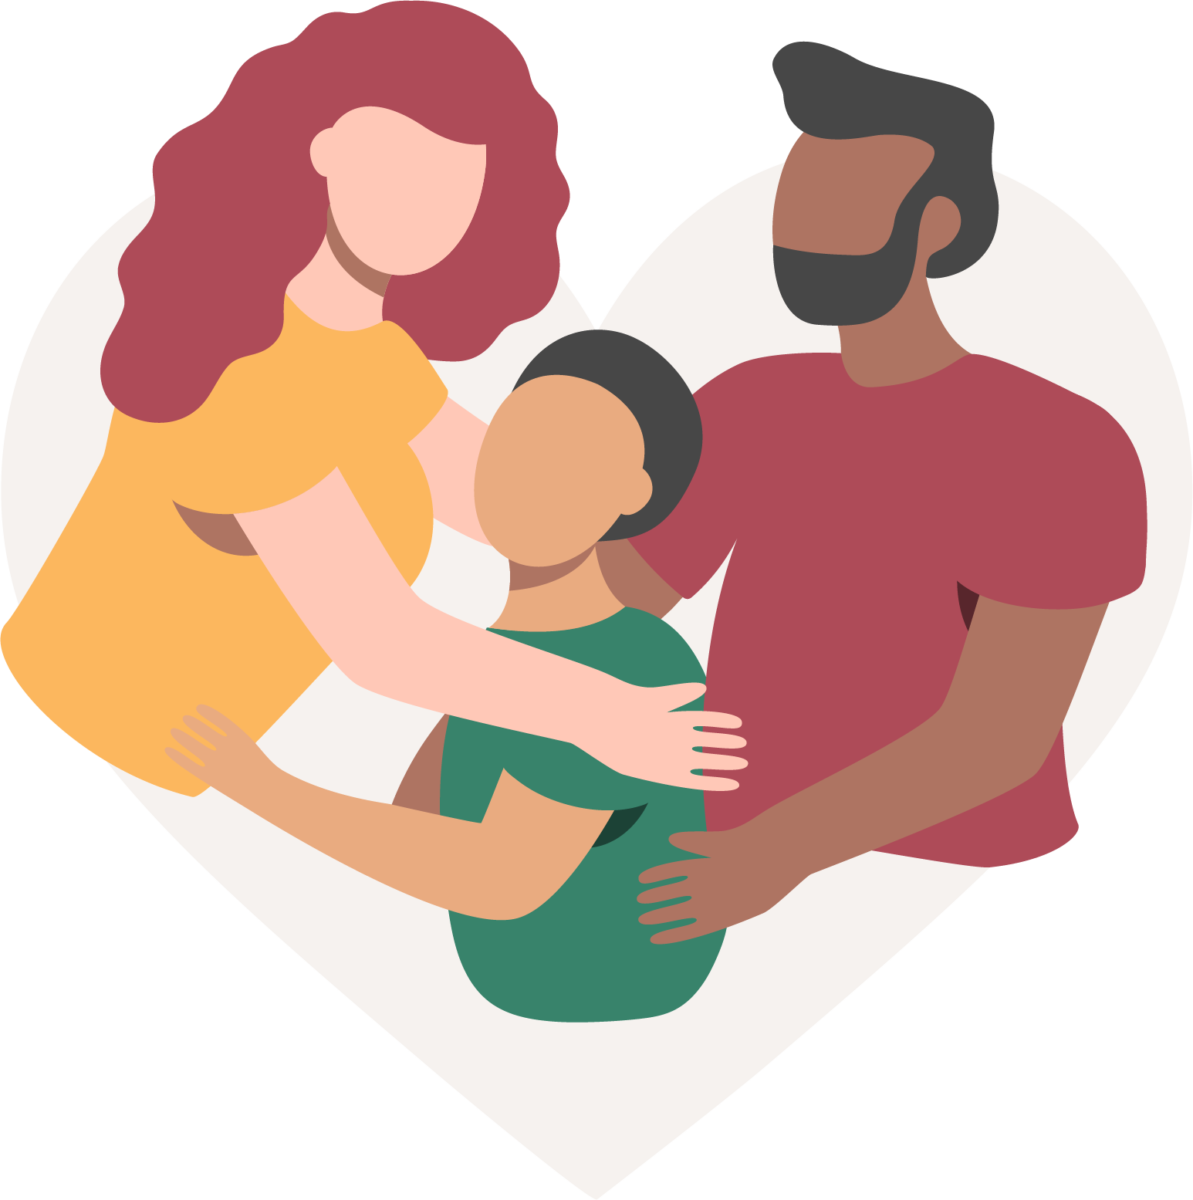 Frau mit roten Haaren und gelbem Hemd und Mann mit schwarzen Haaren und Bart umarmen ein Kind mit grünem Hemd und schwarzen Haaren, das eine Familieneinheit darstellt